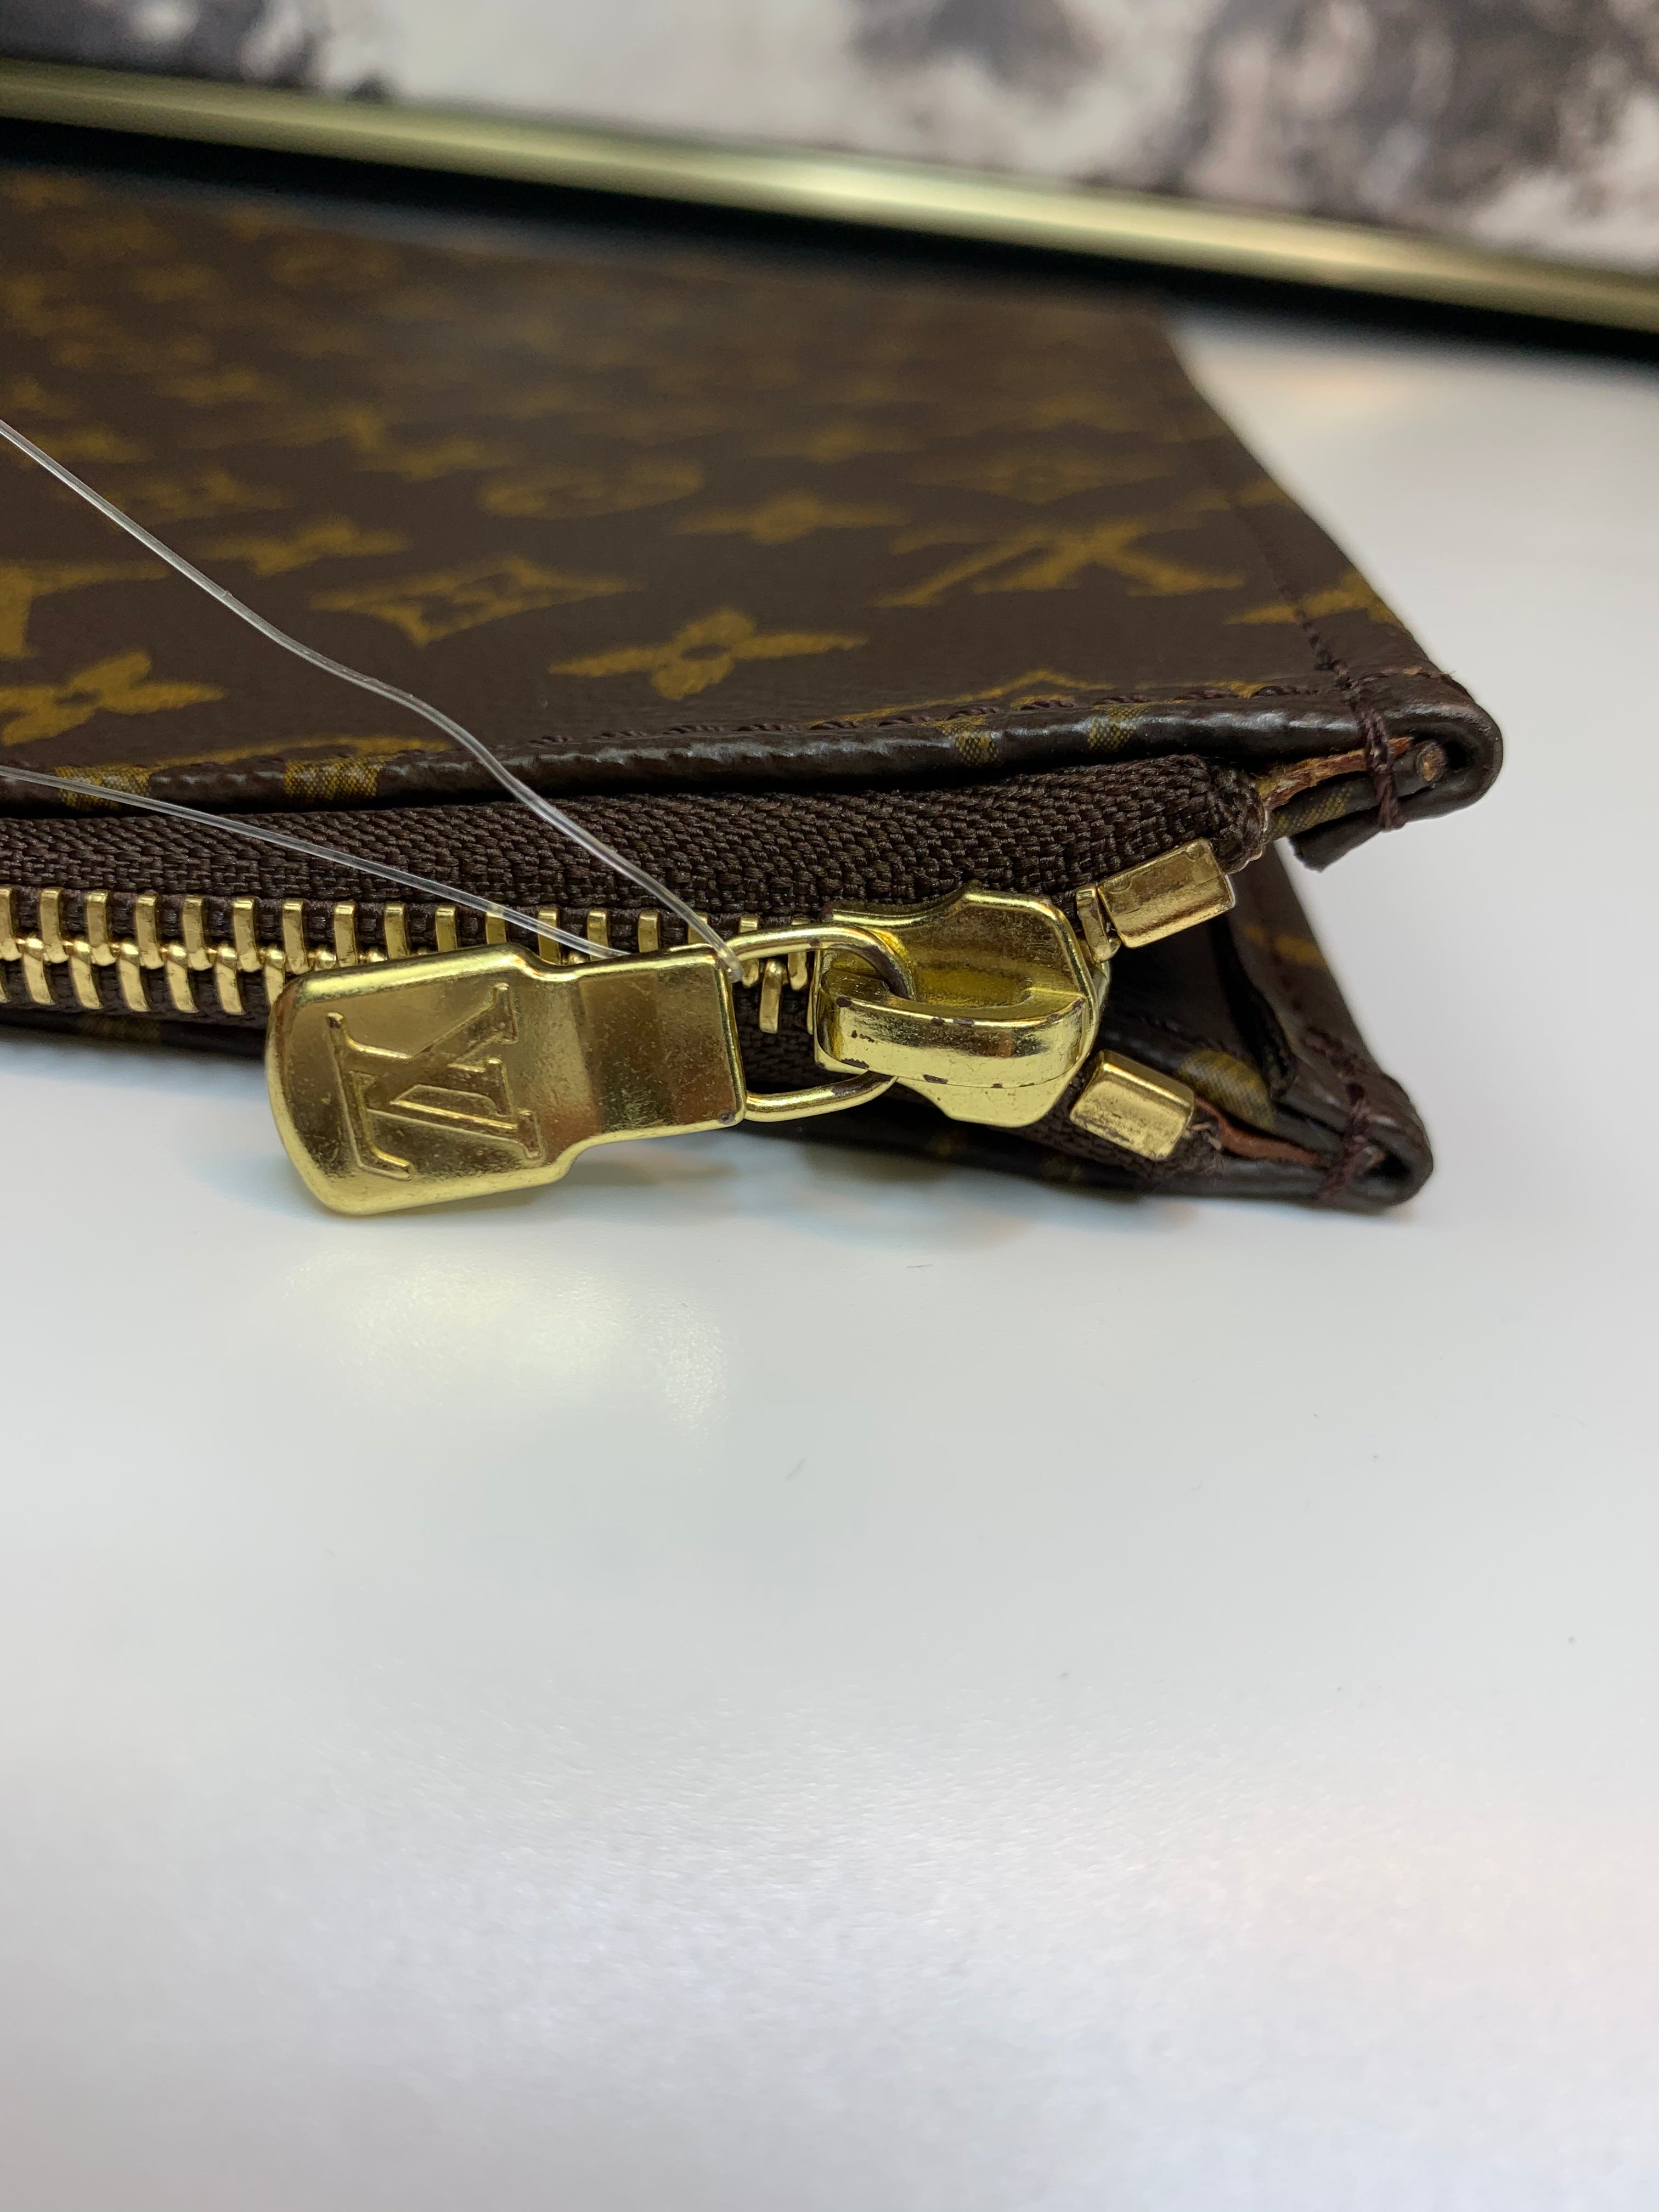 Louis Vuitton, Accessories, Louis Vuitton Laptop Case